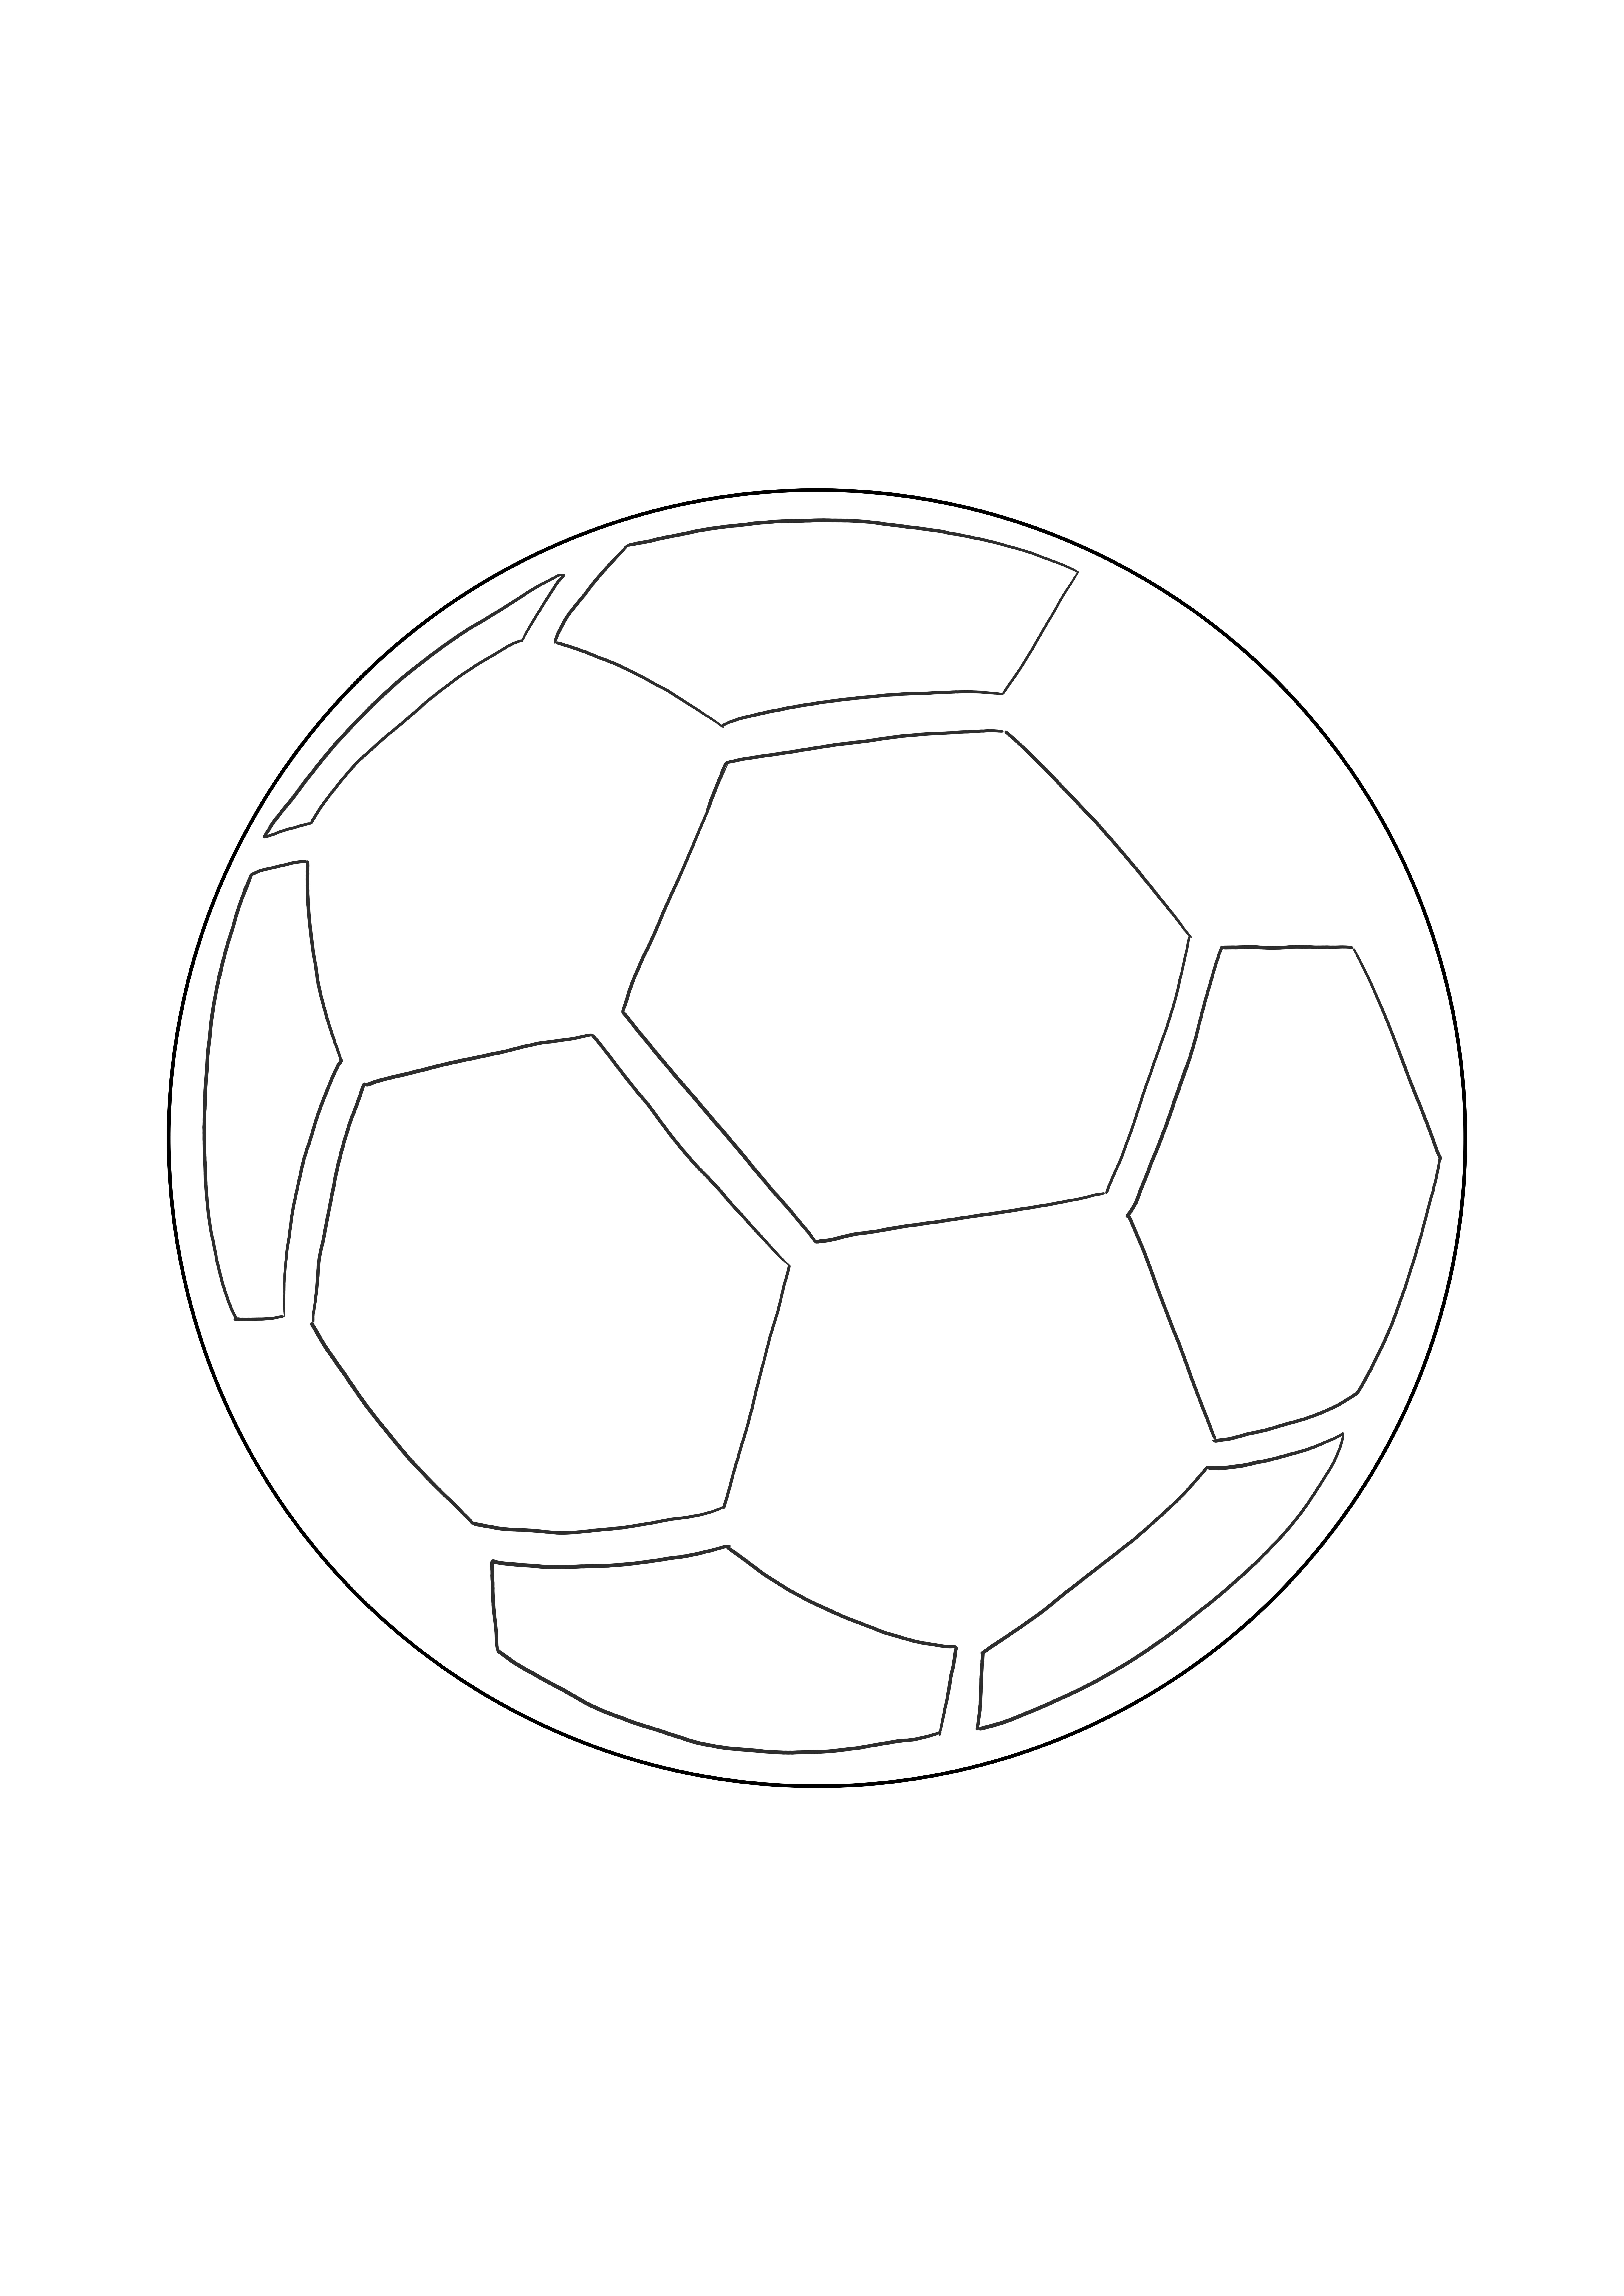 Imagen fácil para colorear de un balón de fútbol gratis para imprimir o descargar